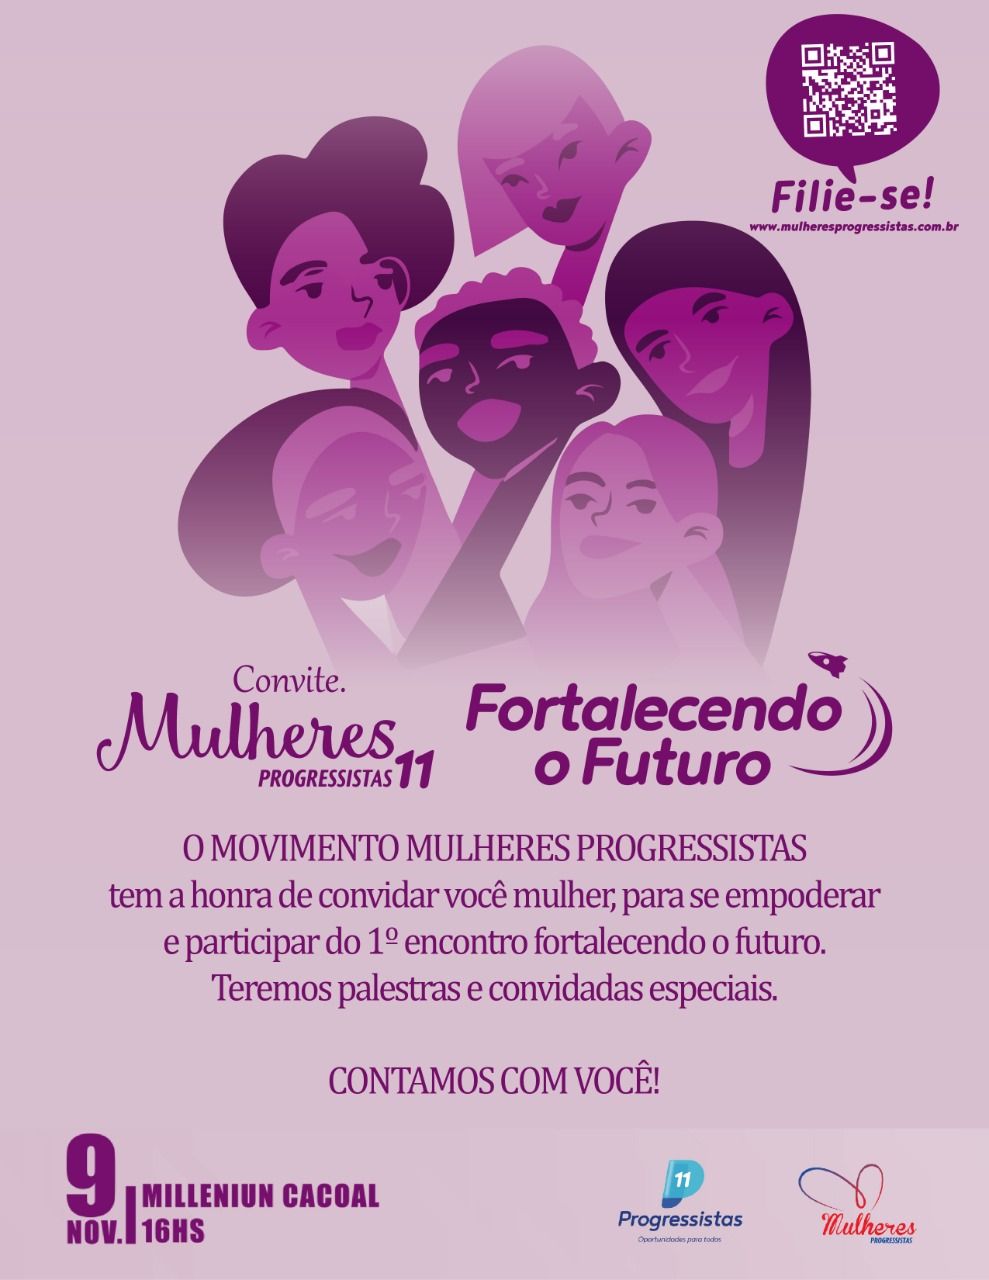 Progressistas realizam grande evento para filiação de mulheres em Rondônia - progressistas - progressistas rondonia